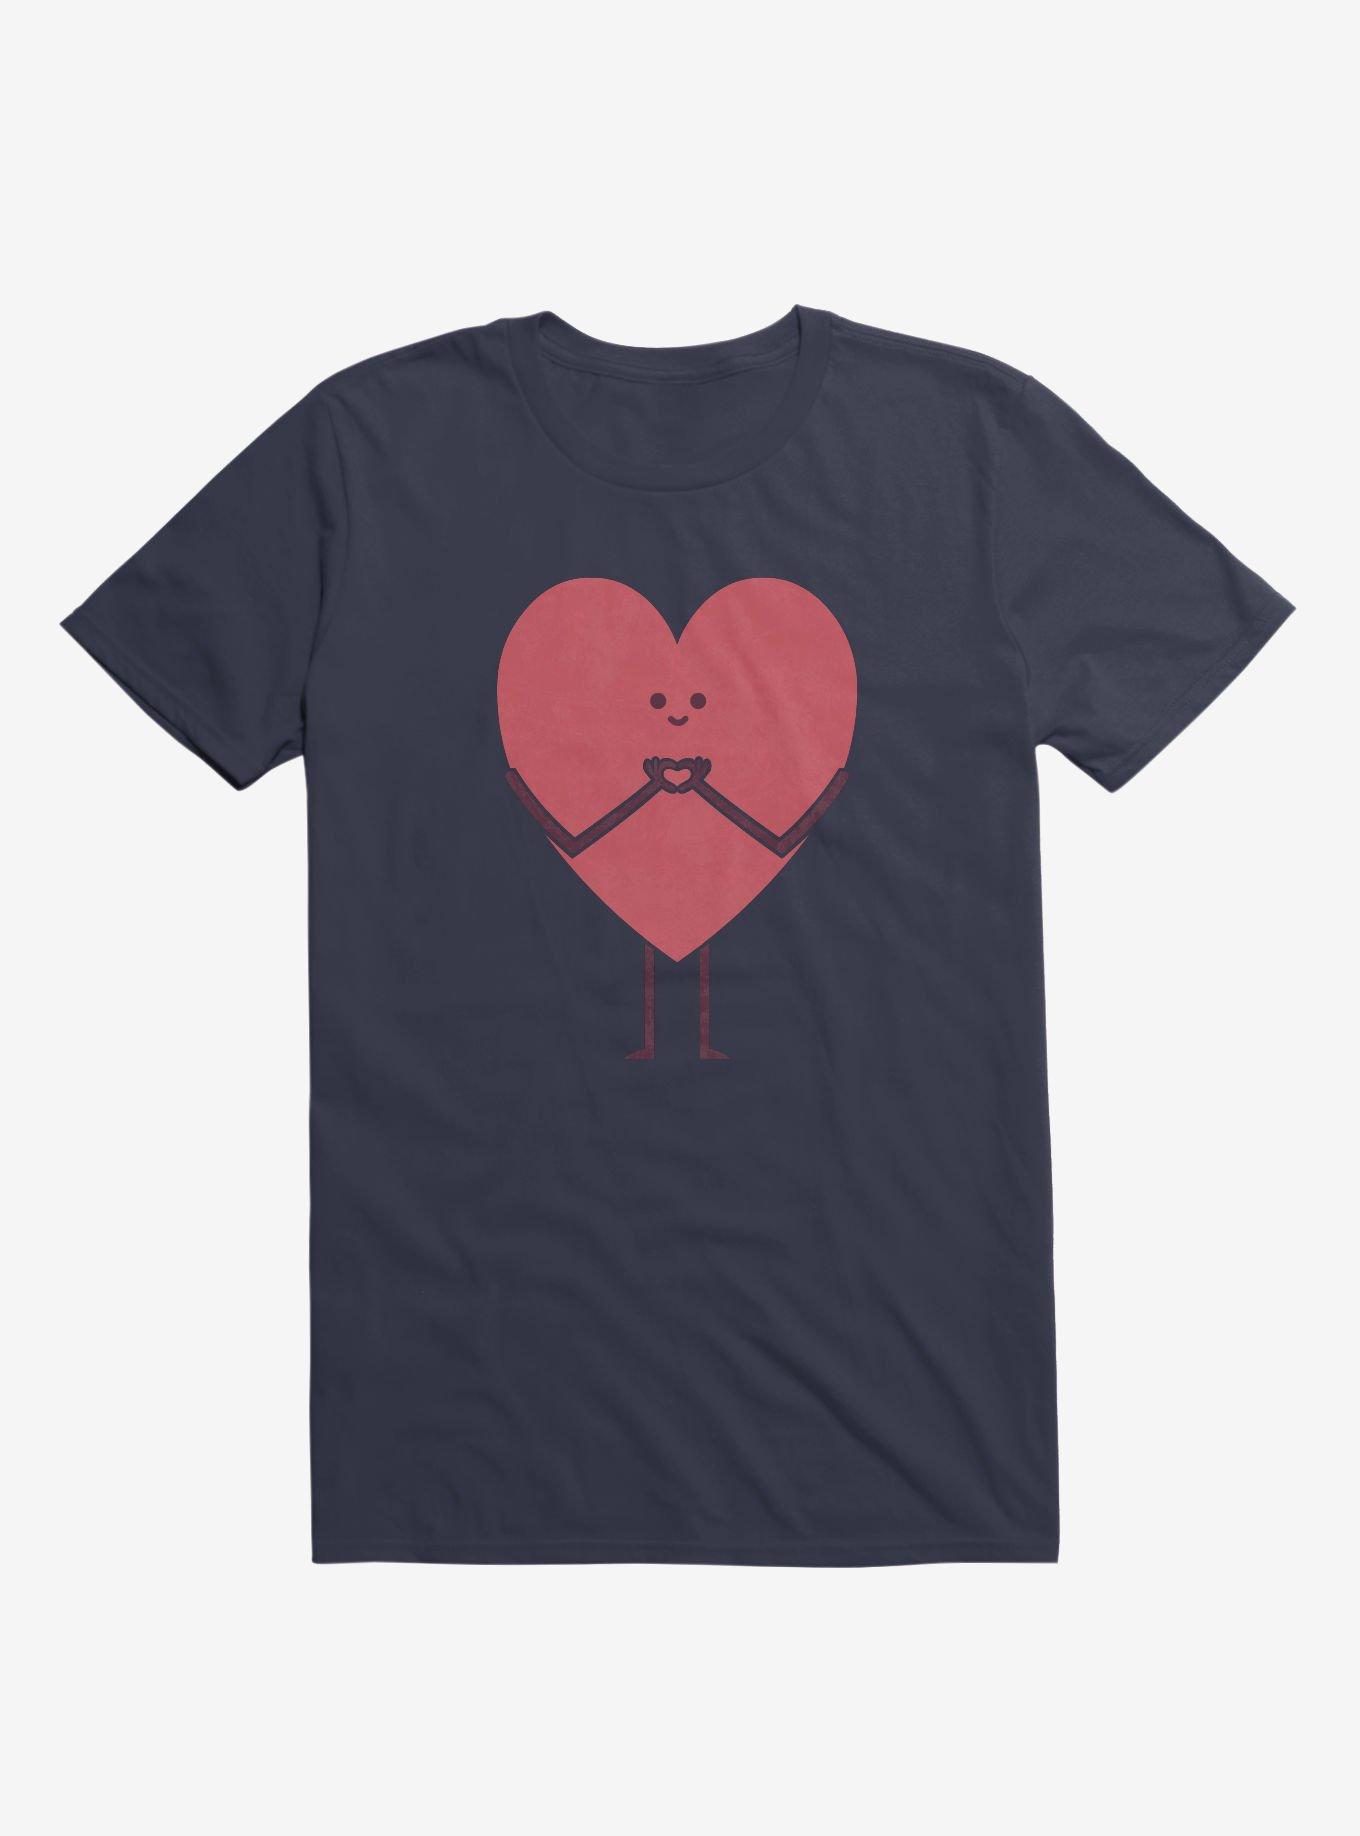 Heart Making Heart Hands Navy Blue T-Shirt, NAVY, hi-res